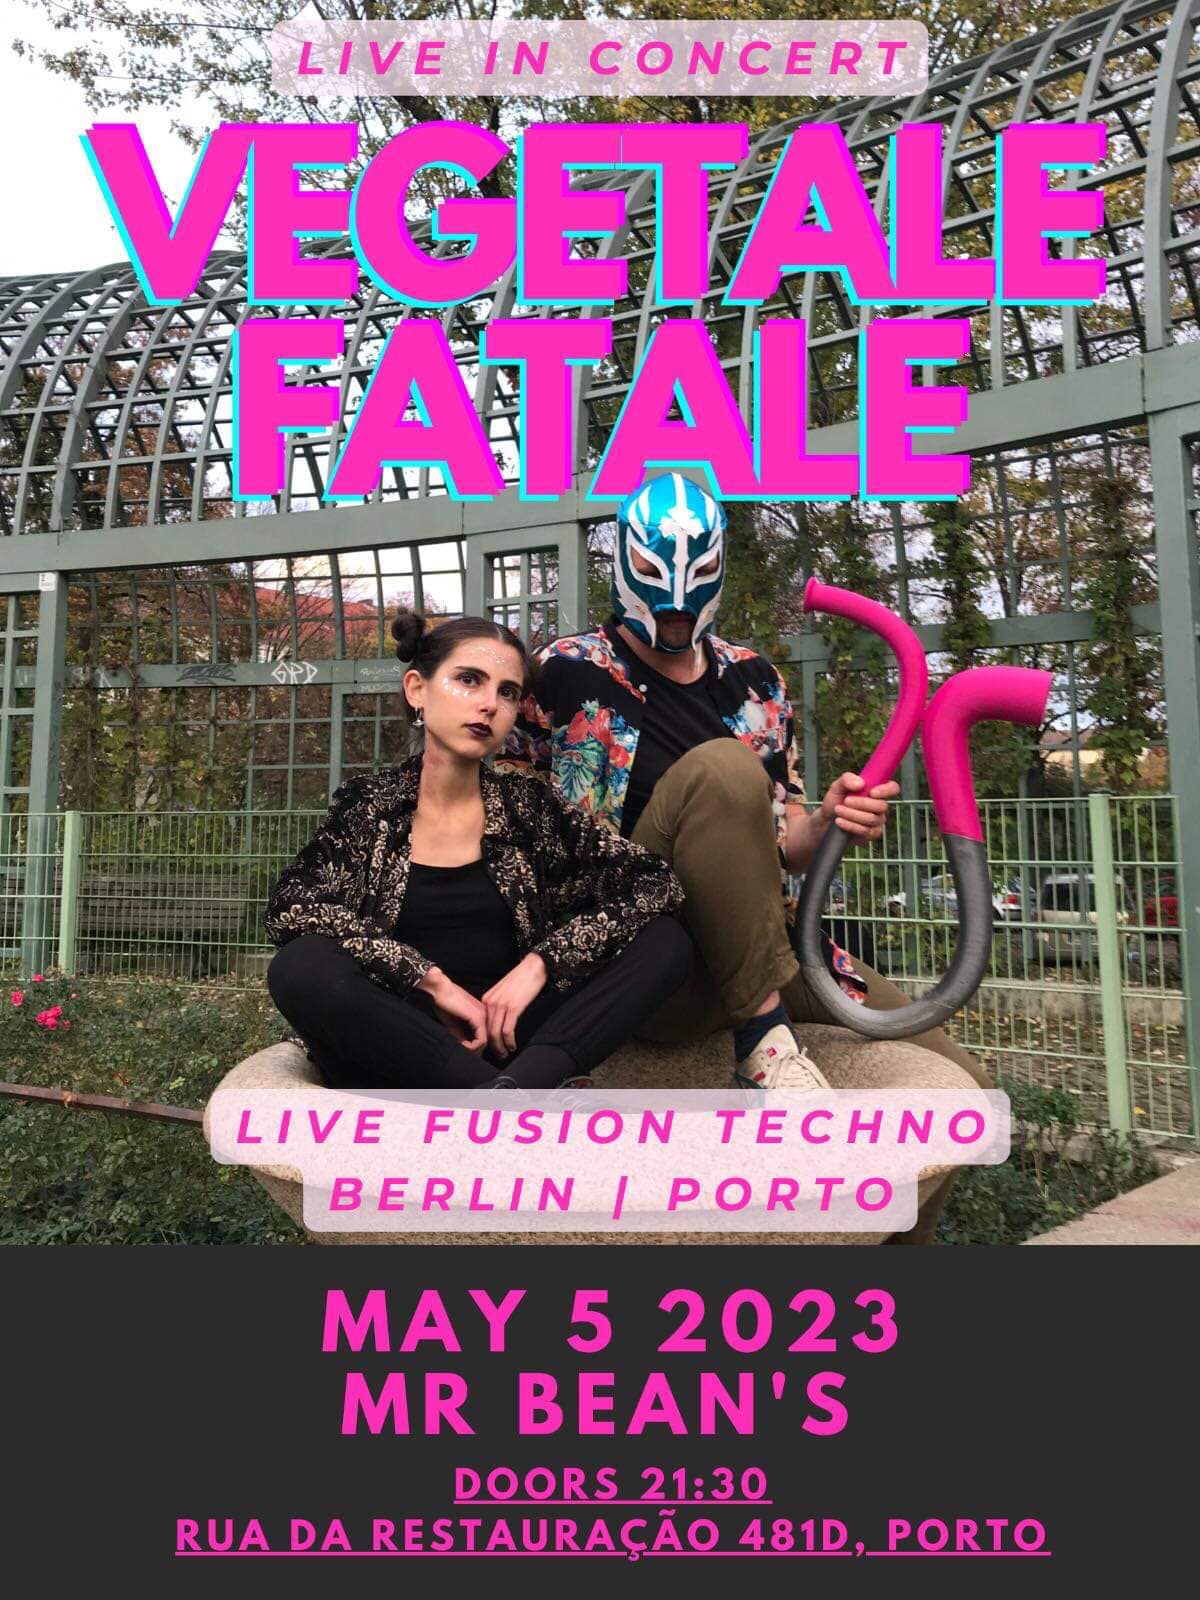 Vegetale Fatale - Techno concert with Violin & Didgeridoo